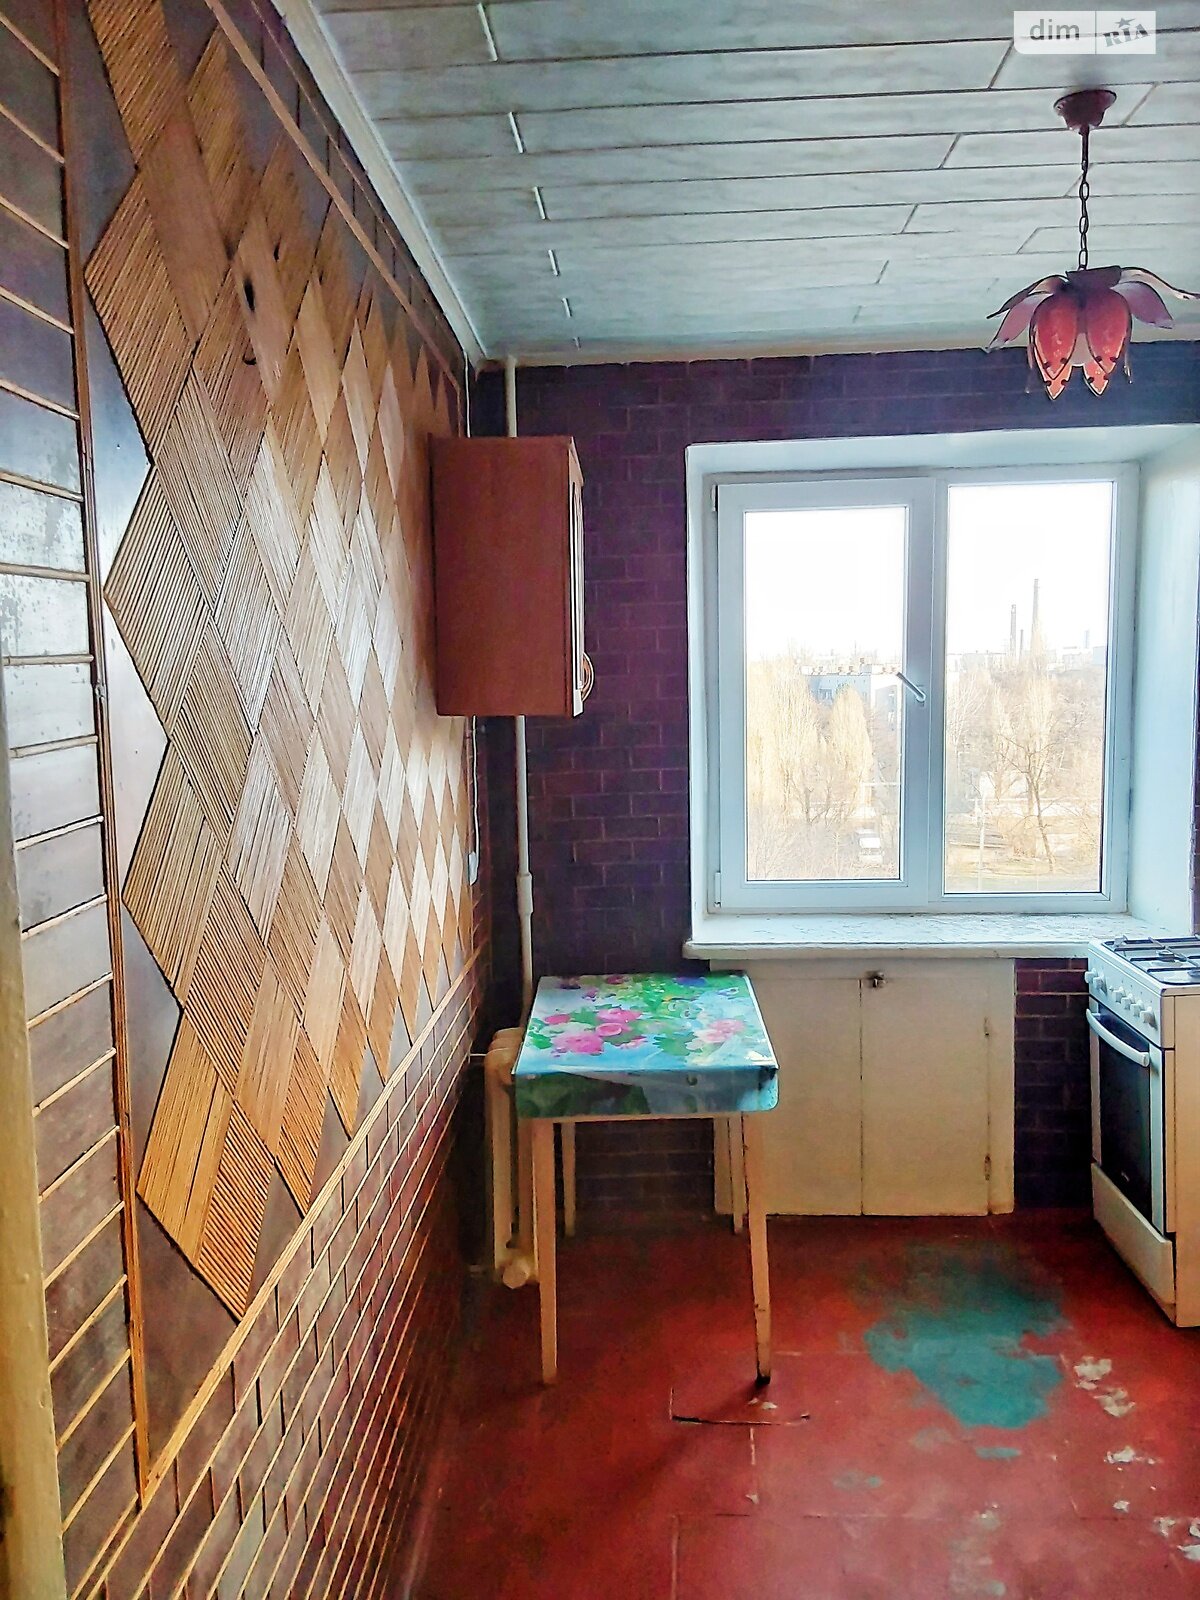 Продажа трехкомнатной квартиры в Днепре, на просп. Слобожанский 90, район Индустриальный фото 1